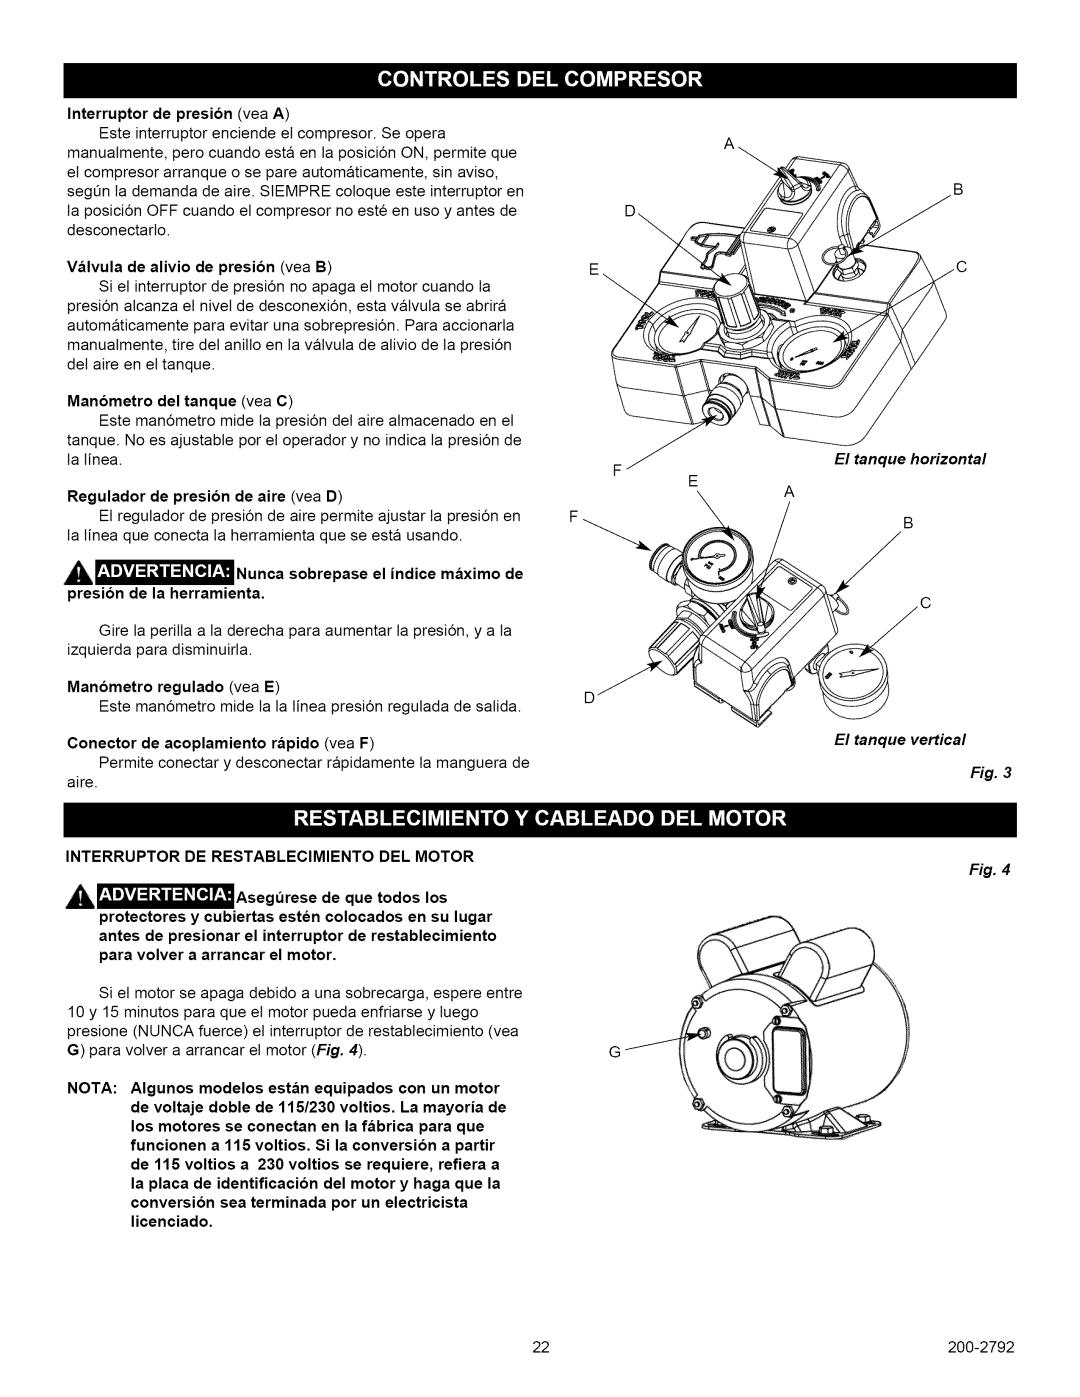 Craftsman 921.16474, 921.16475 owner manual Manometro del tanque vea C 